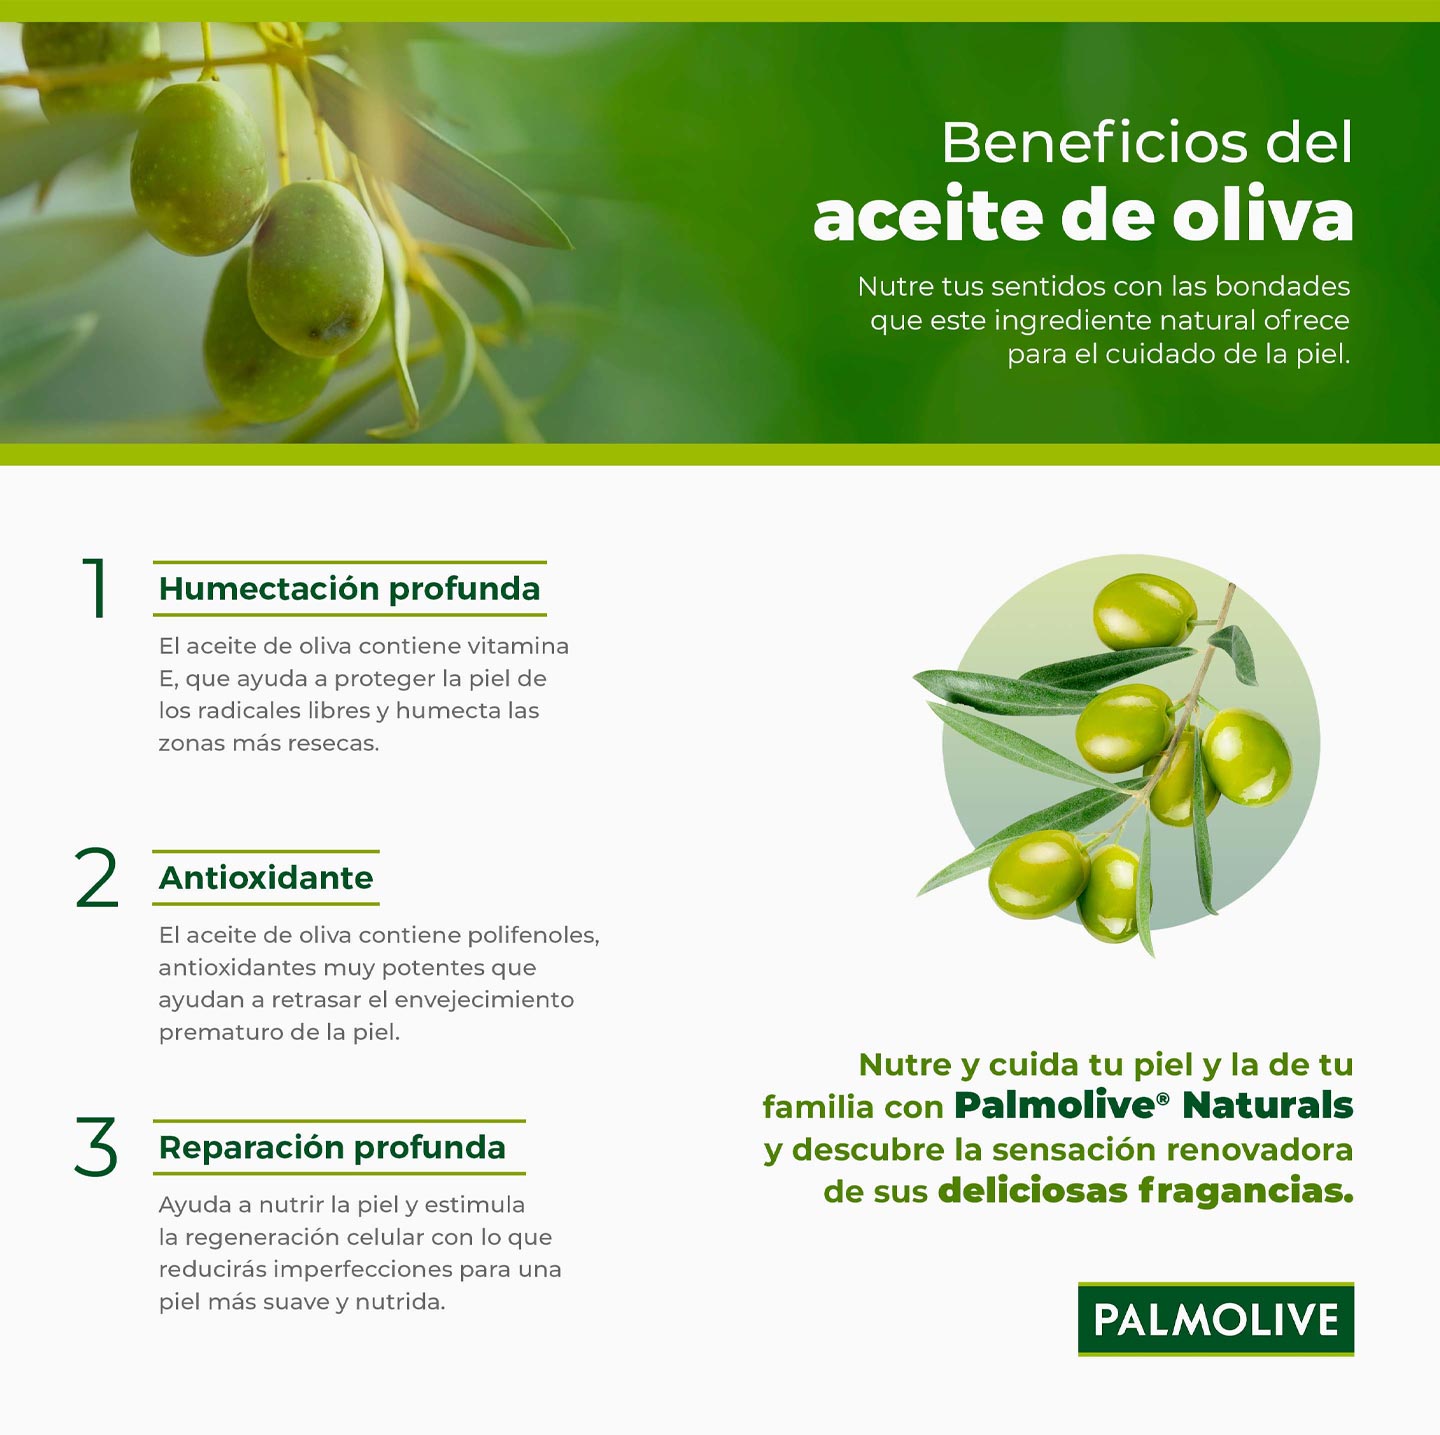 infografía sobre los beneficios del aceite de oliva para el cuidado de la piel